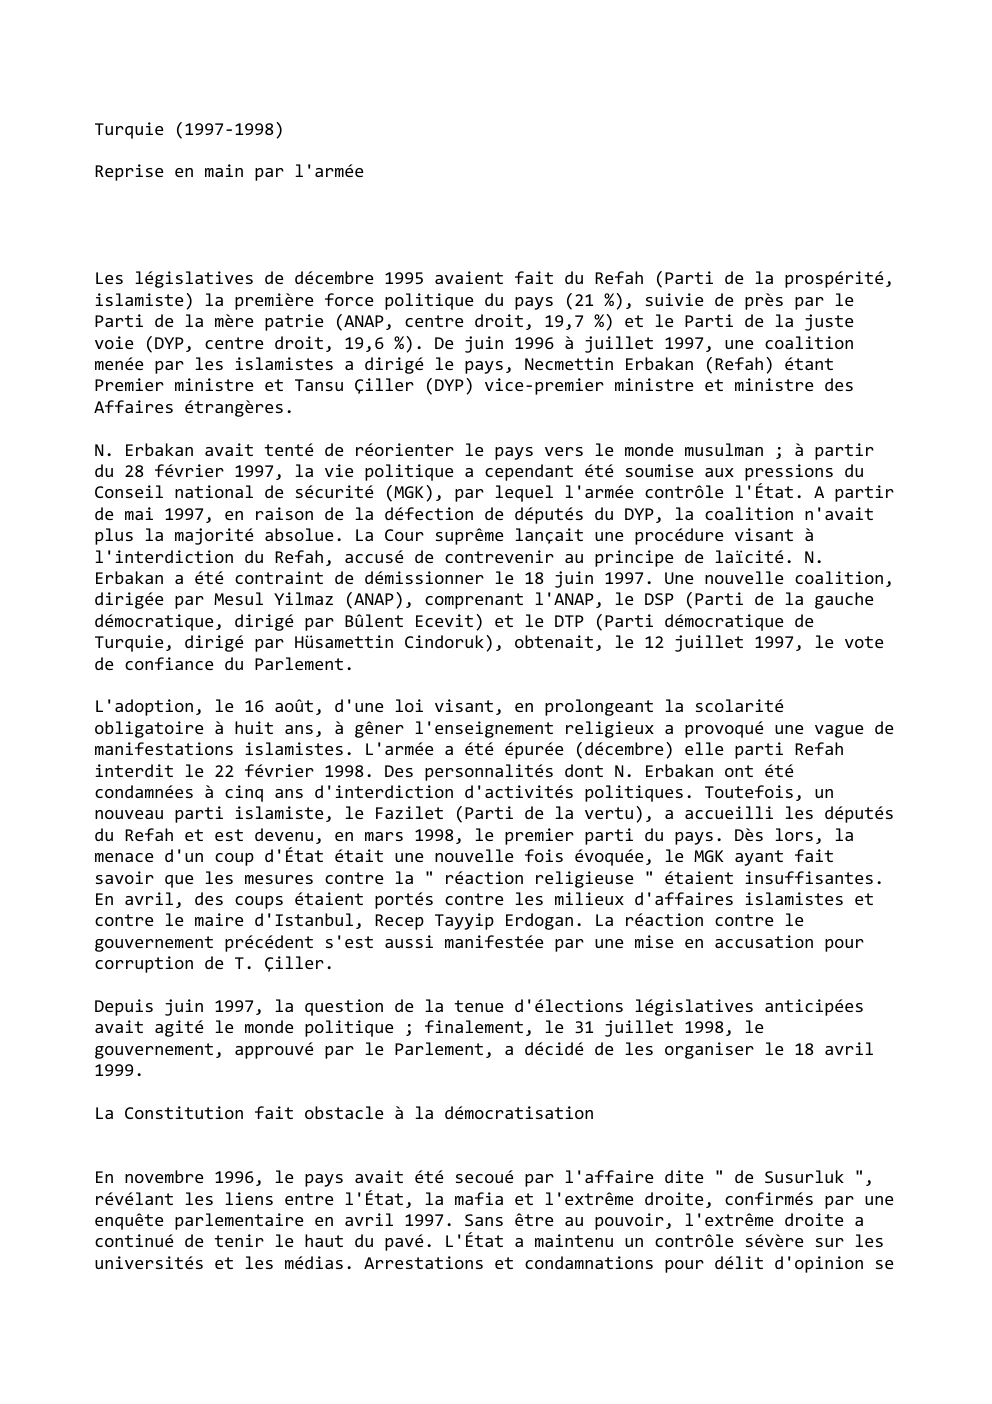 Prévisualisation du document Turquie (1997-1998)
Reprise en main par l'armée

Les législatives de décembre 1995 avaient fait du Refah (Parti de la prospérité,...